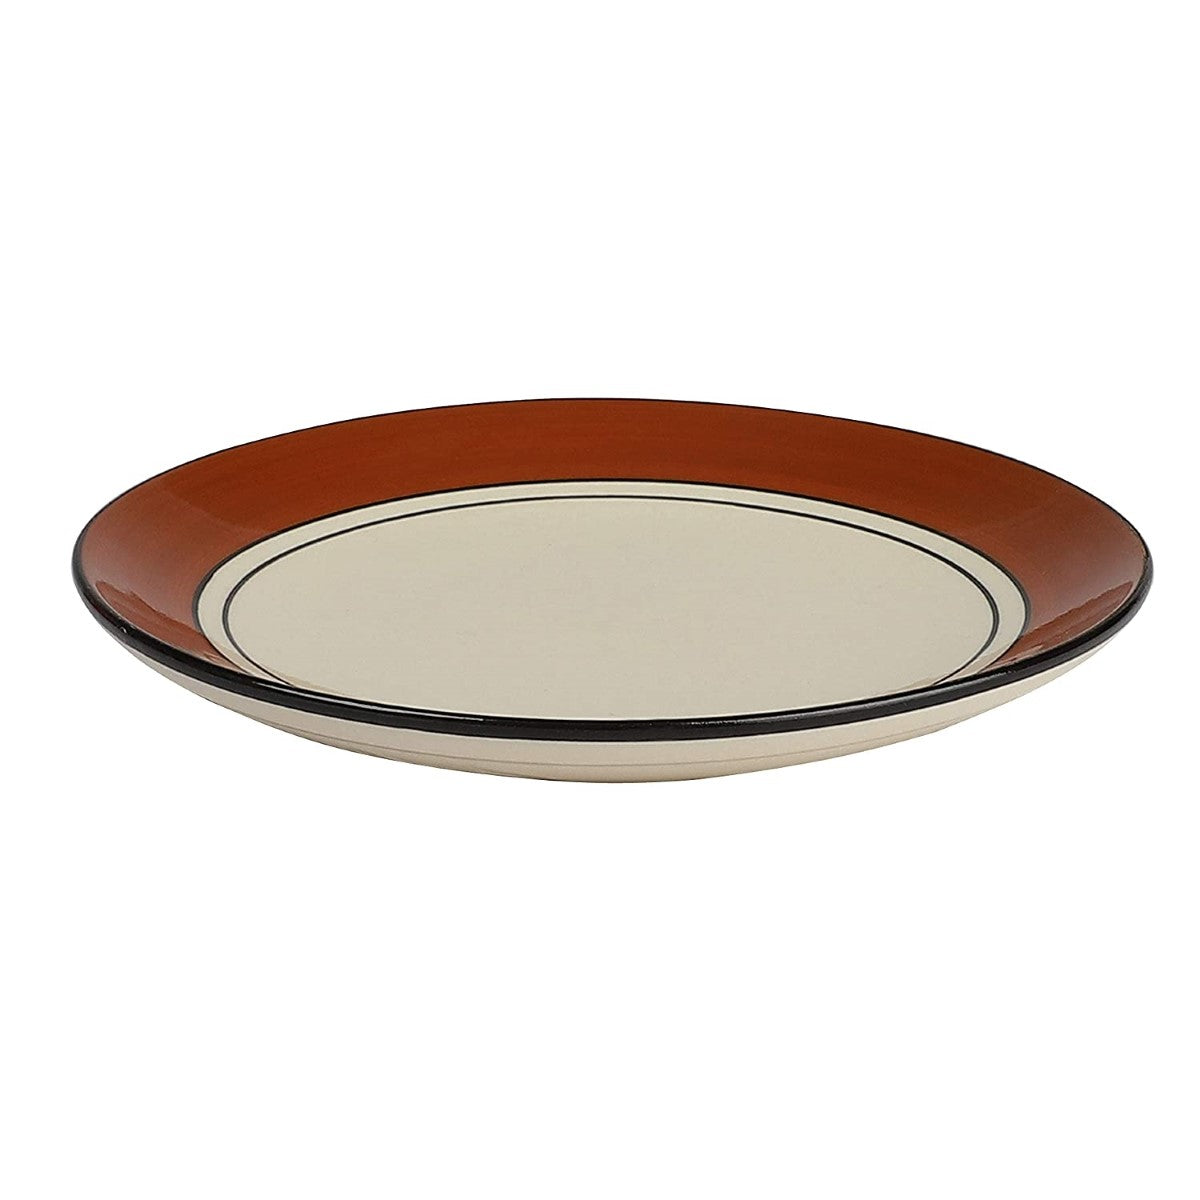 Cream & Brown Ceramic Quarter Plates (Set of 4)